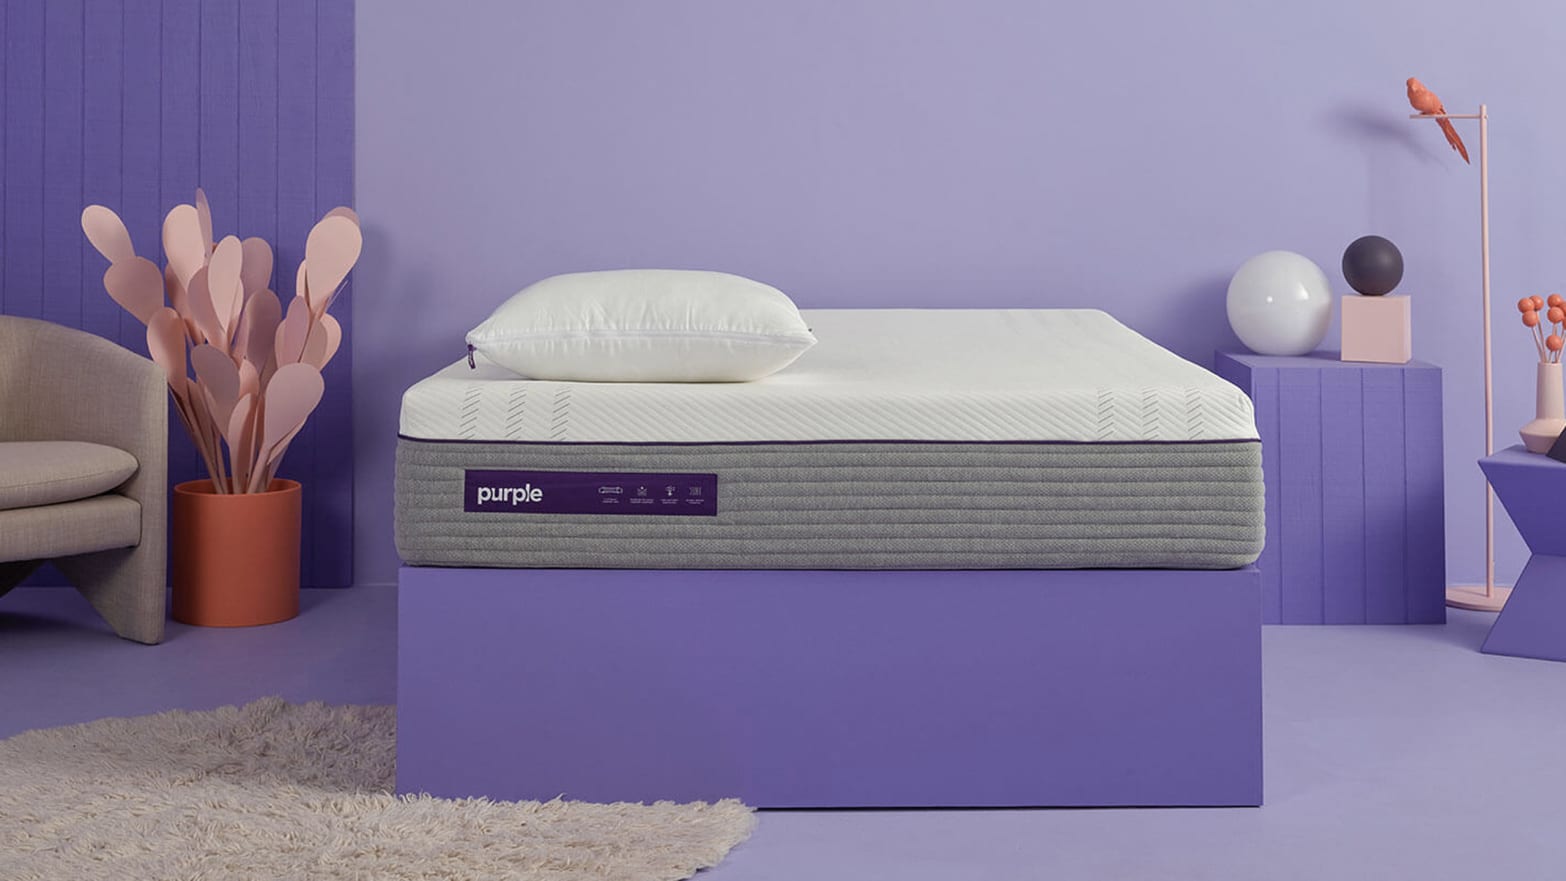 Purpleâs Hybrid Premier Mattress Made Me a Better Sleeper